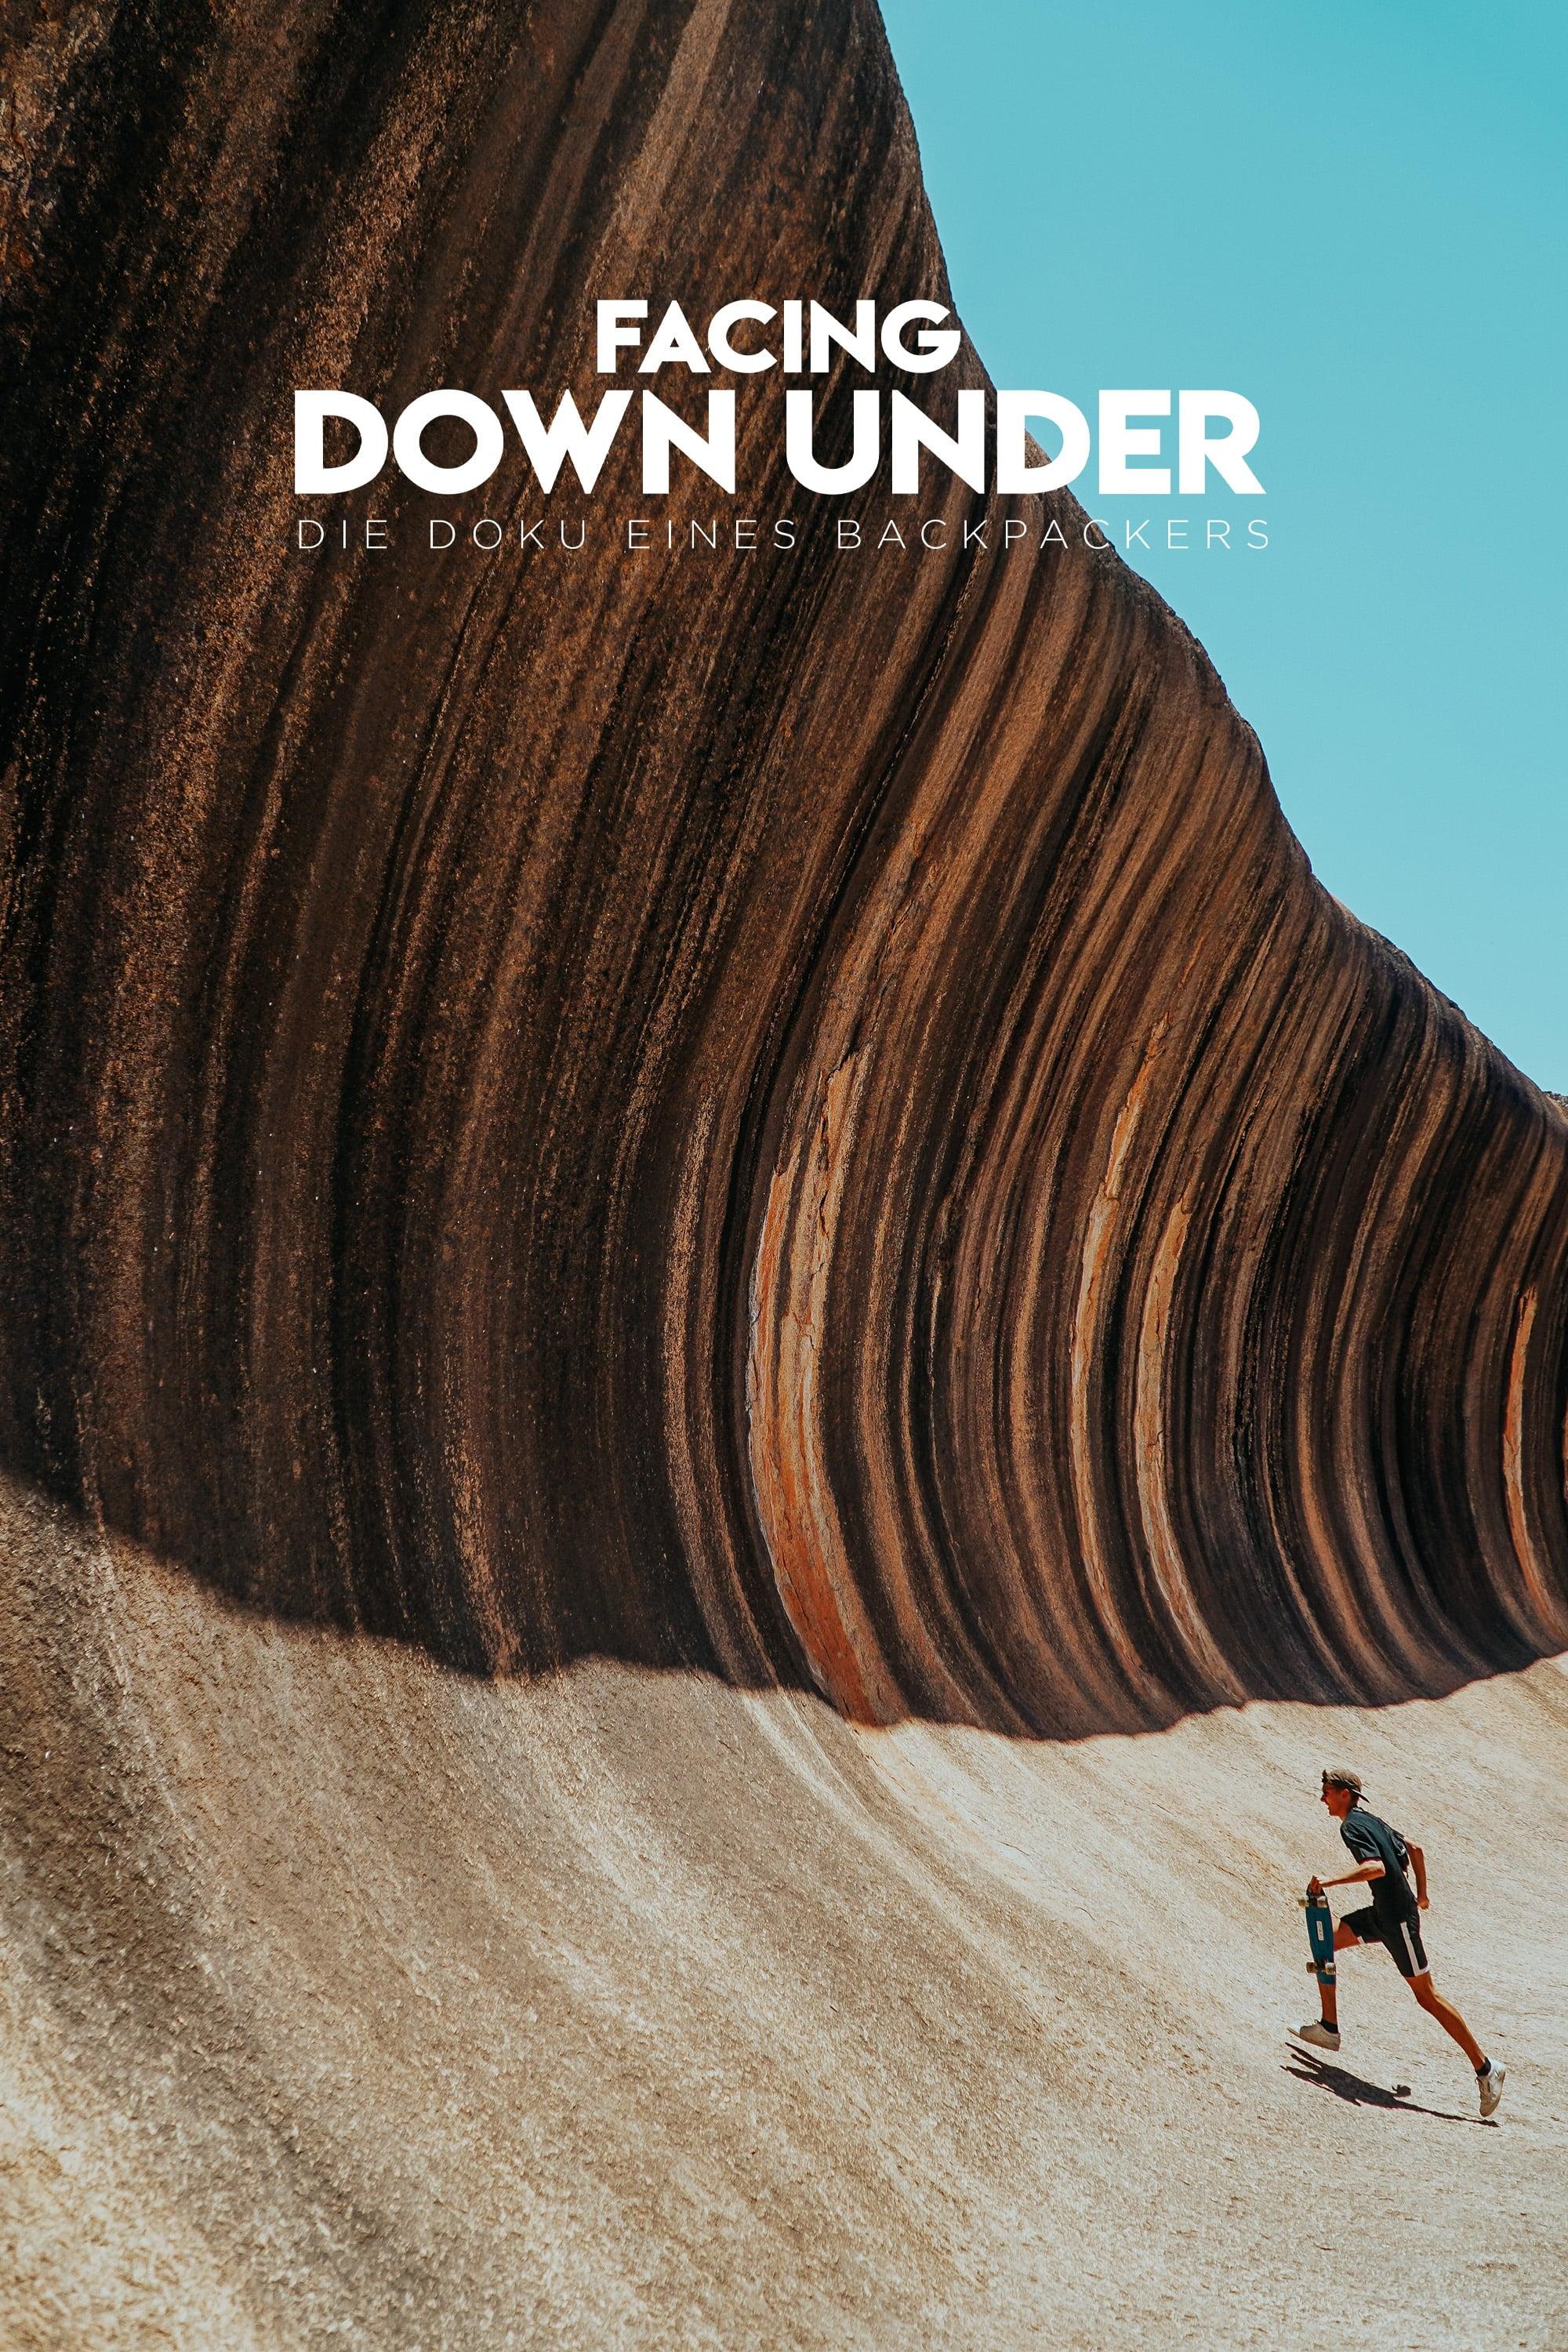 Facing Down Under - Die Doku eines Backpackers poster